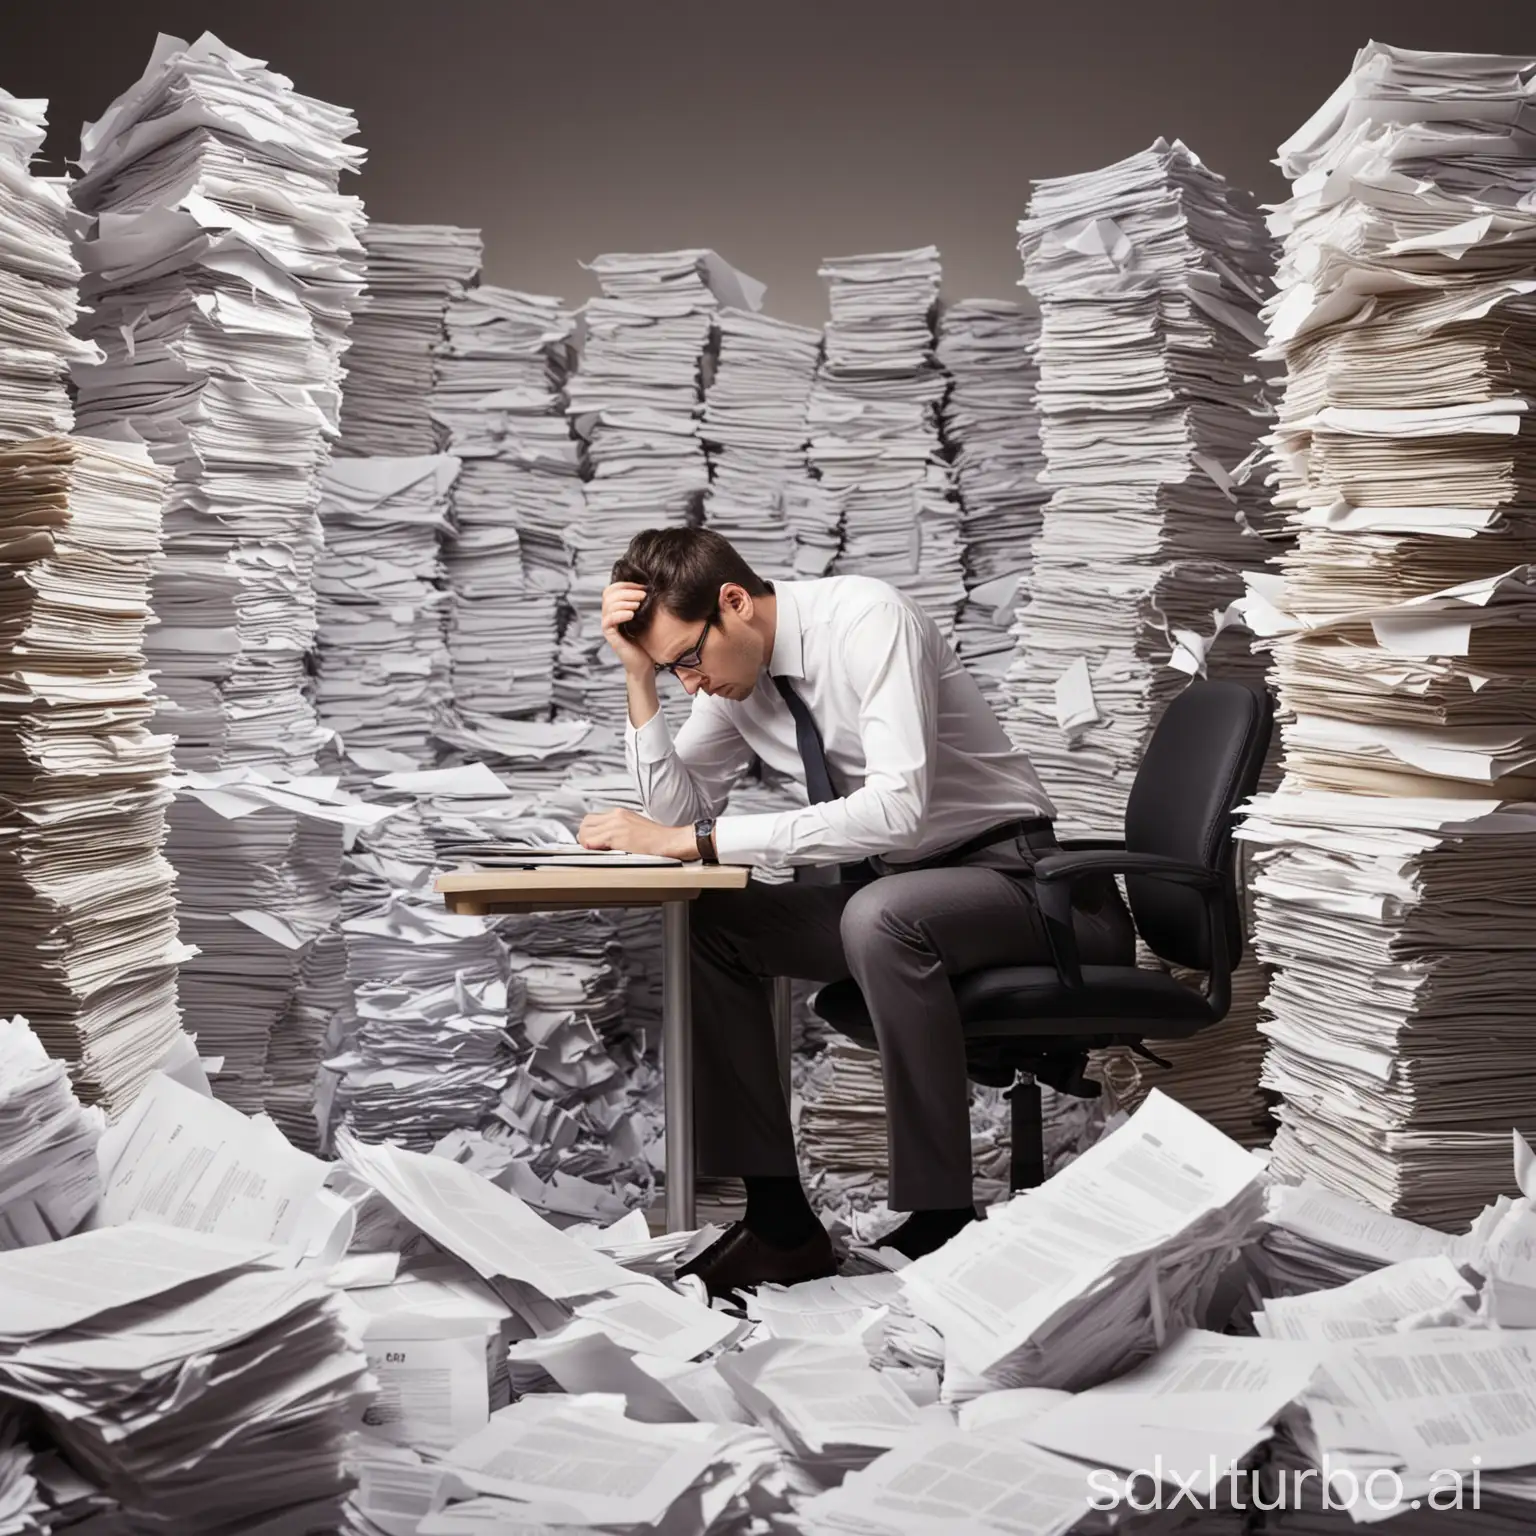 Eine Person, die in einem Büro an einem Schreibtisch sitzt und vor einem großen Haufen Belegen und Papierstapeln verzweifelt versucht, Ordnung in das Chaos zu bringen.